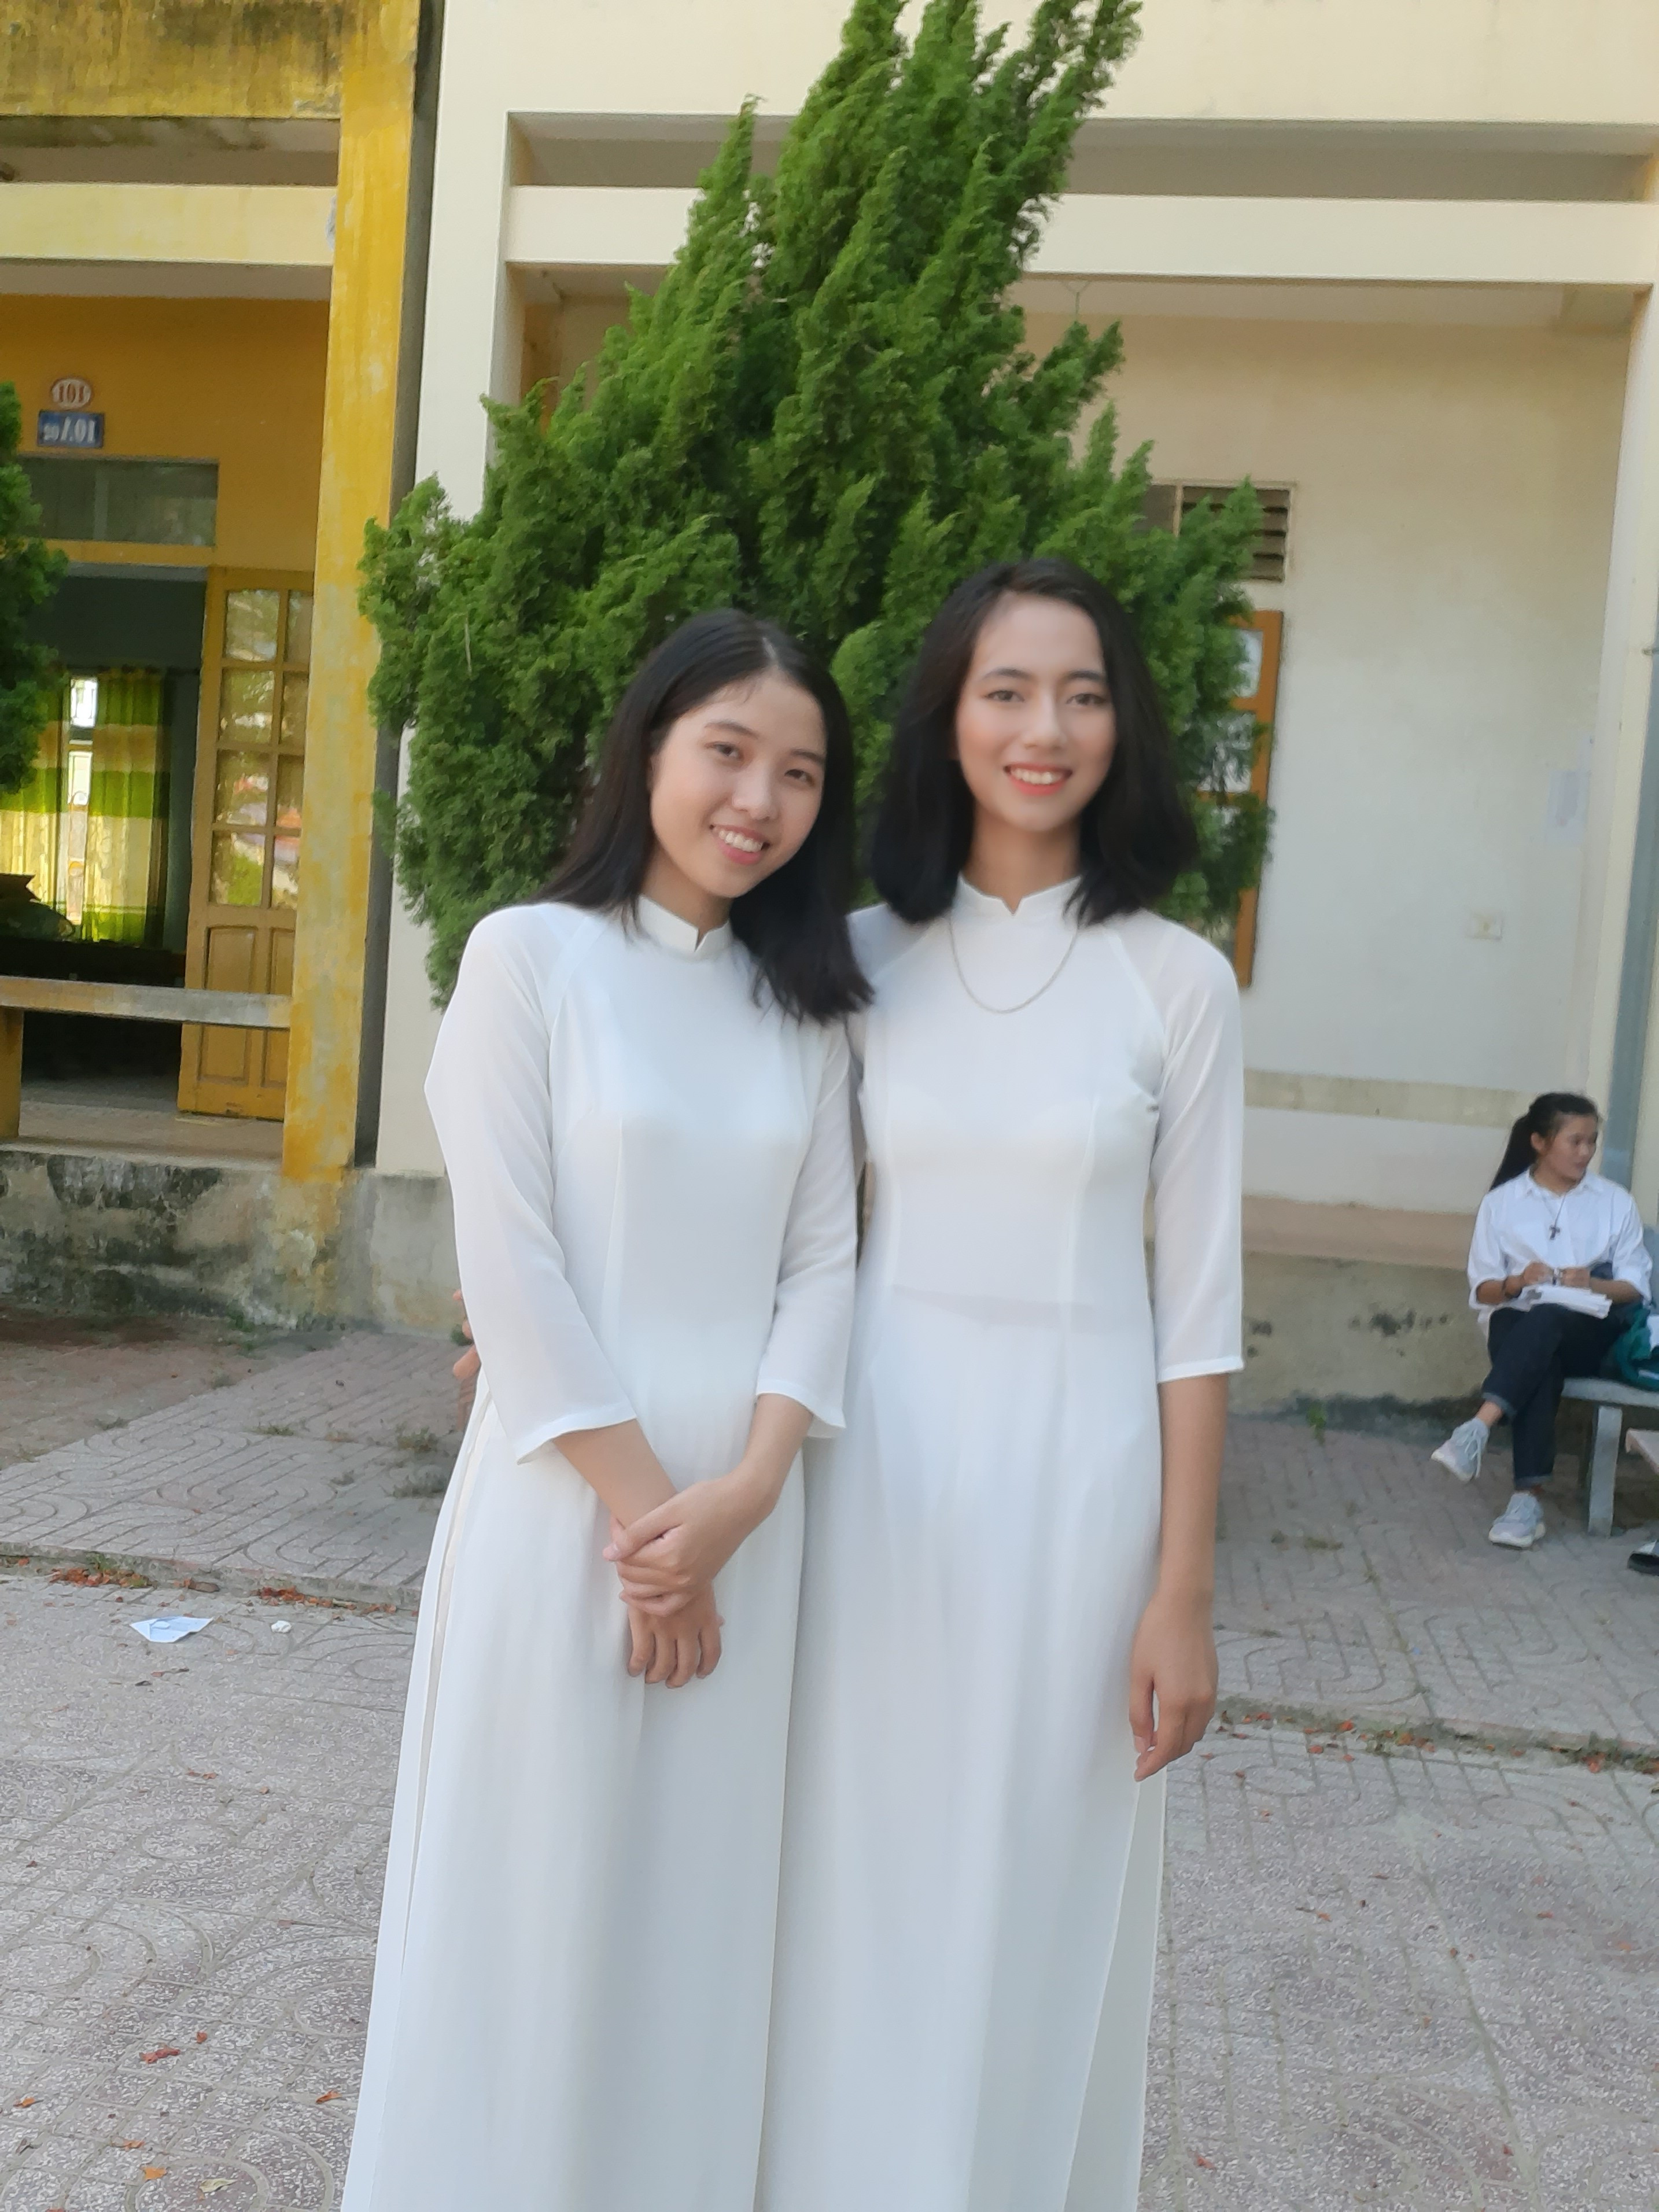 Trần Thị Hòa (bên phải) thí sinh có điểm thi khối A cao của tỉnh với 29,1 điểm. Ảnh: Hồng Diện